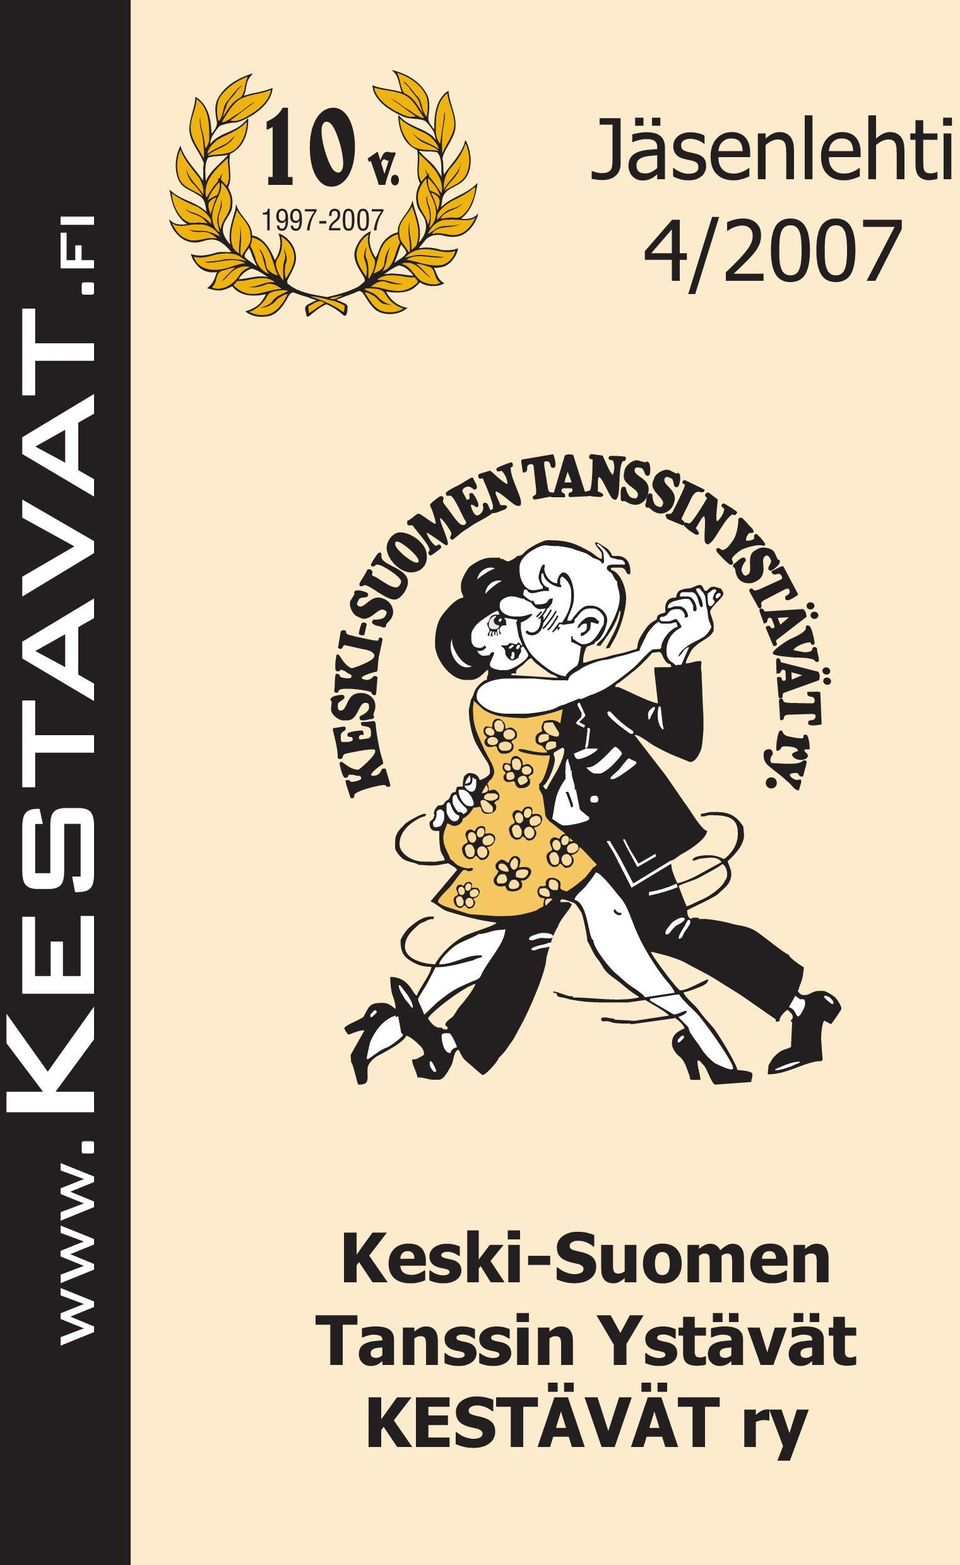 4/2007 Keski-Suomen